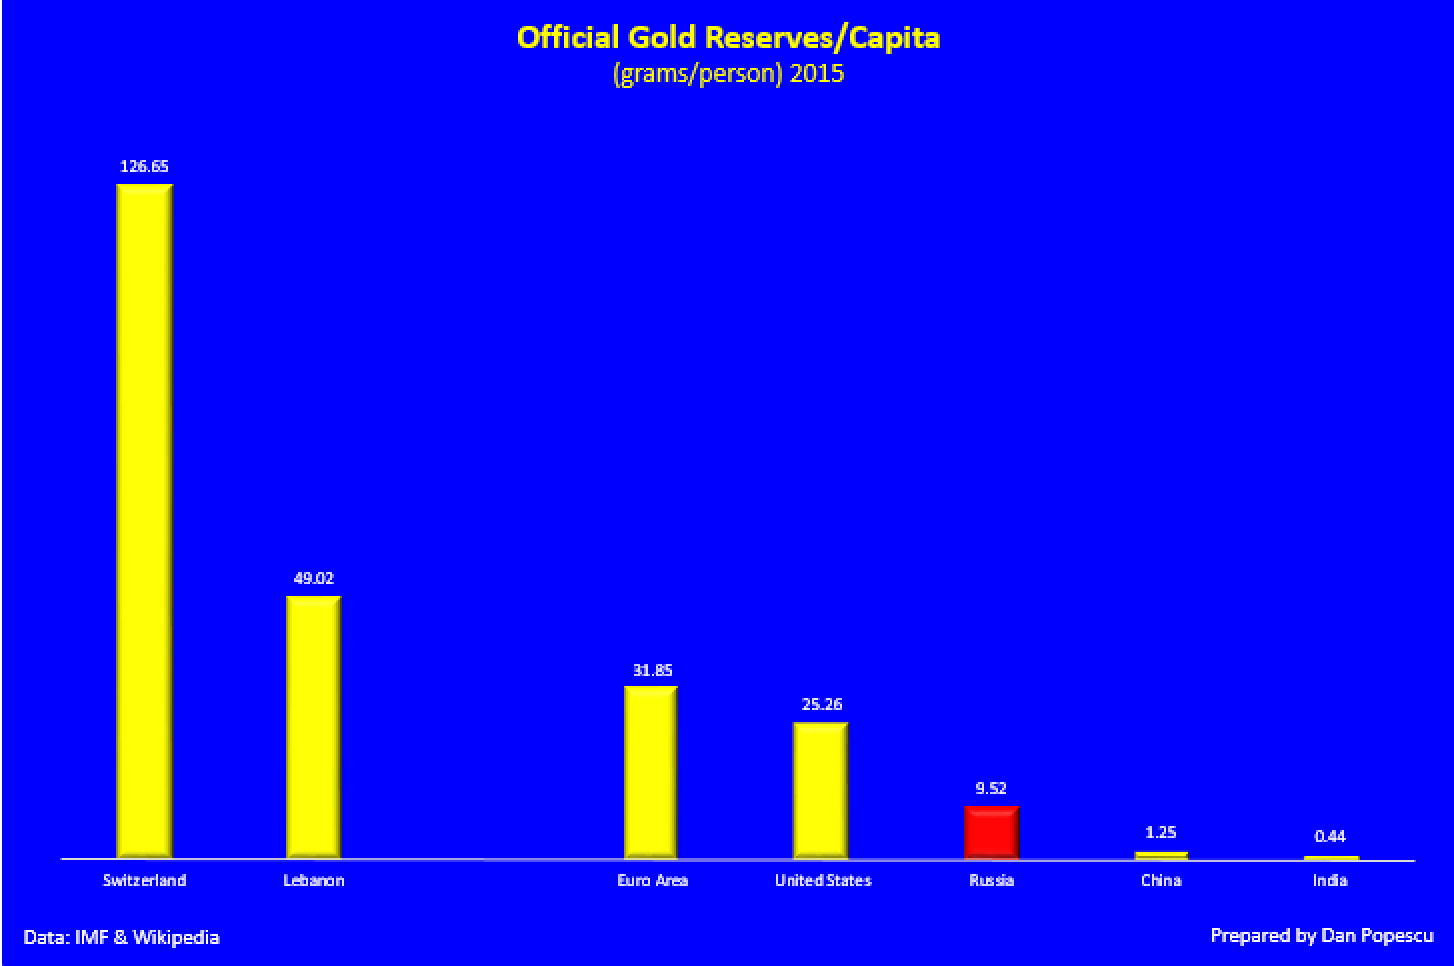 Official gold reserves per capita